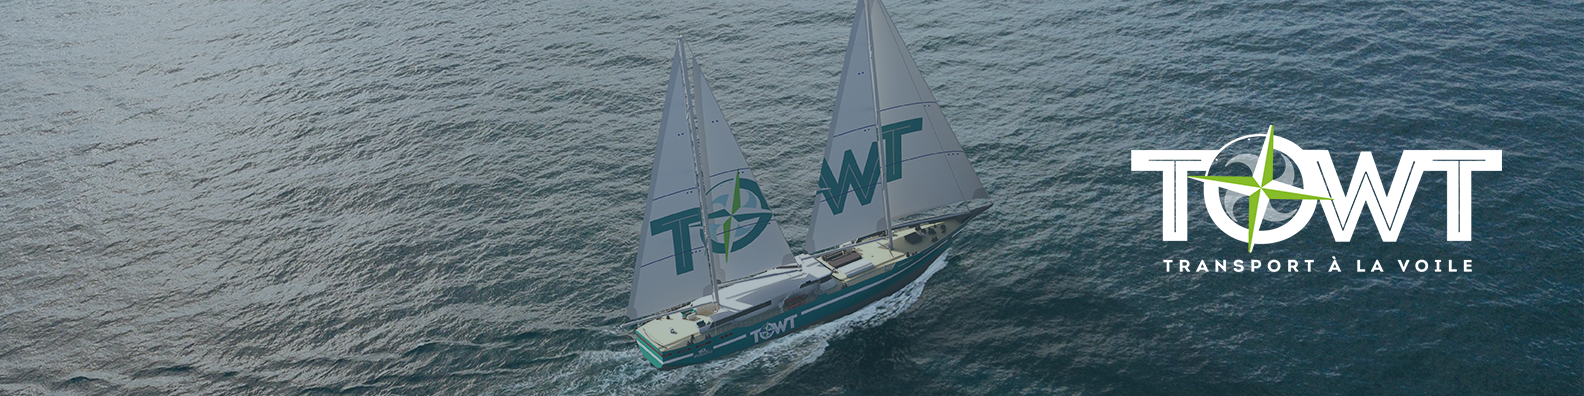 Bannière de TOWT - Transport à la voile